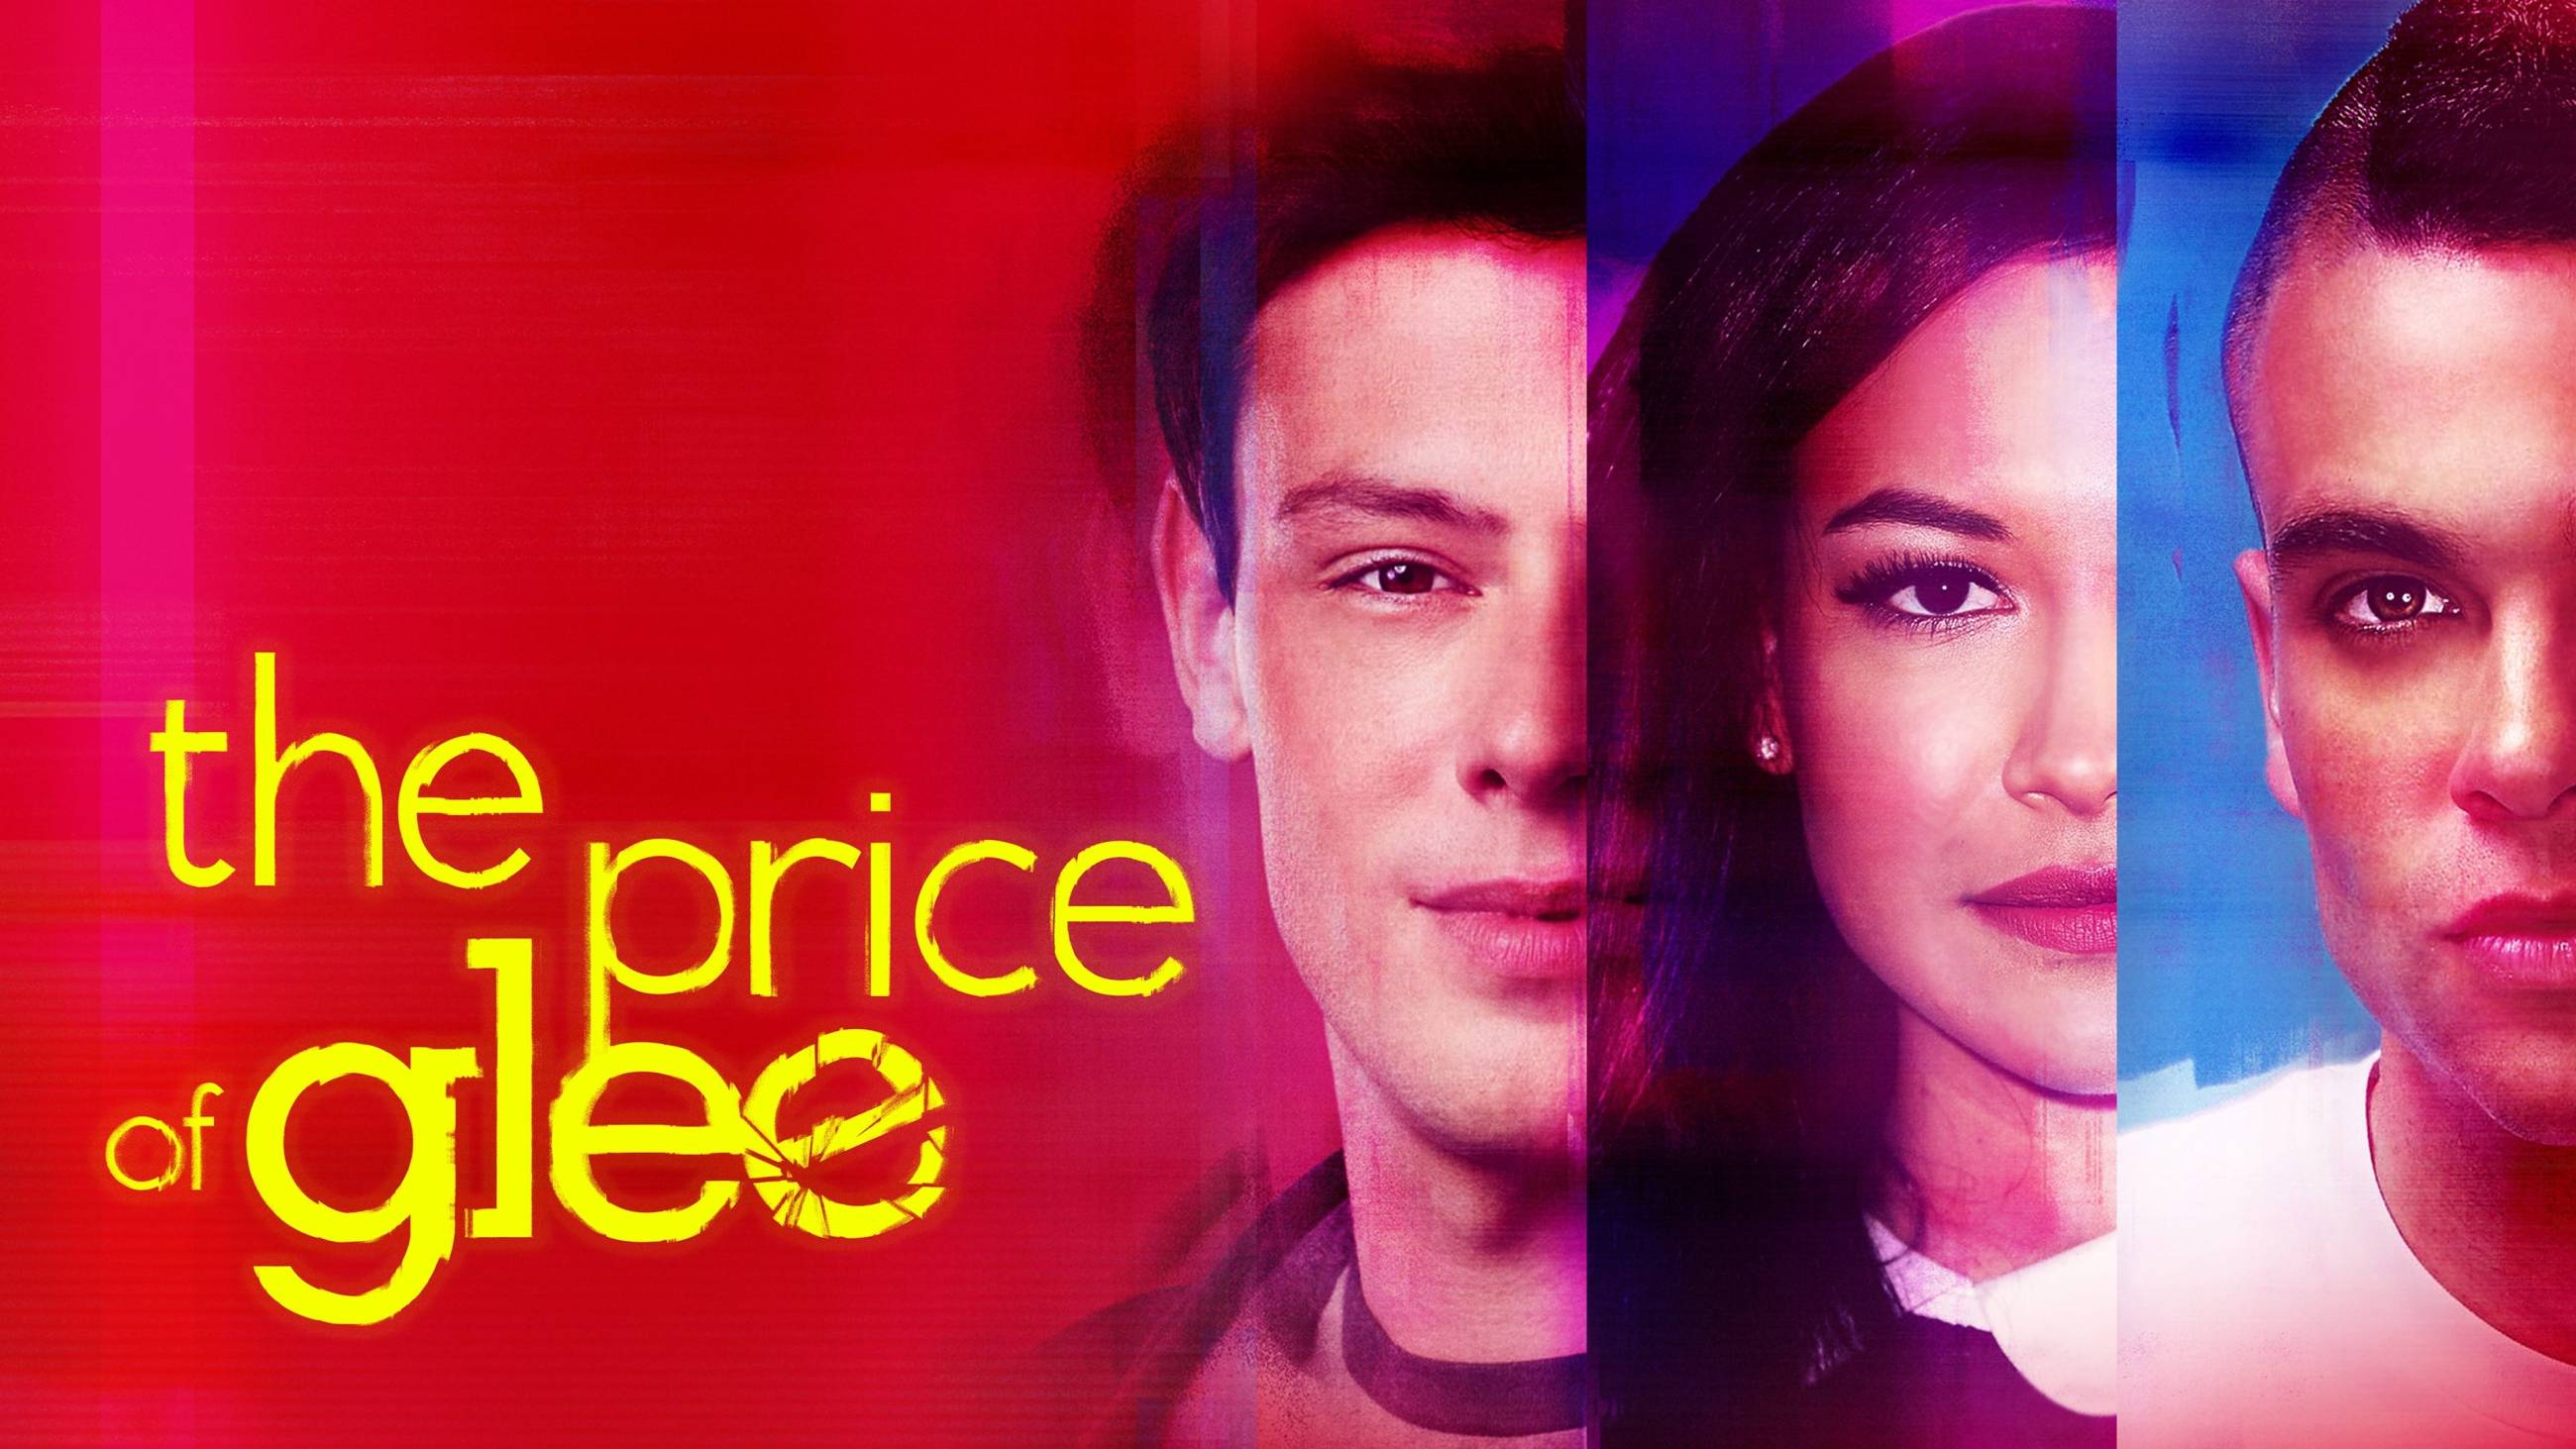 Cubierta de Glee: La serie maldita